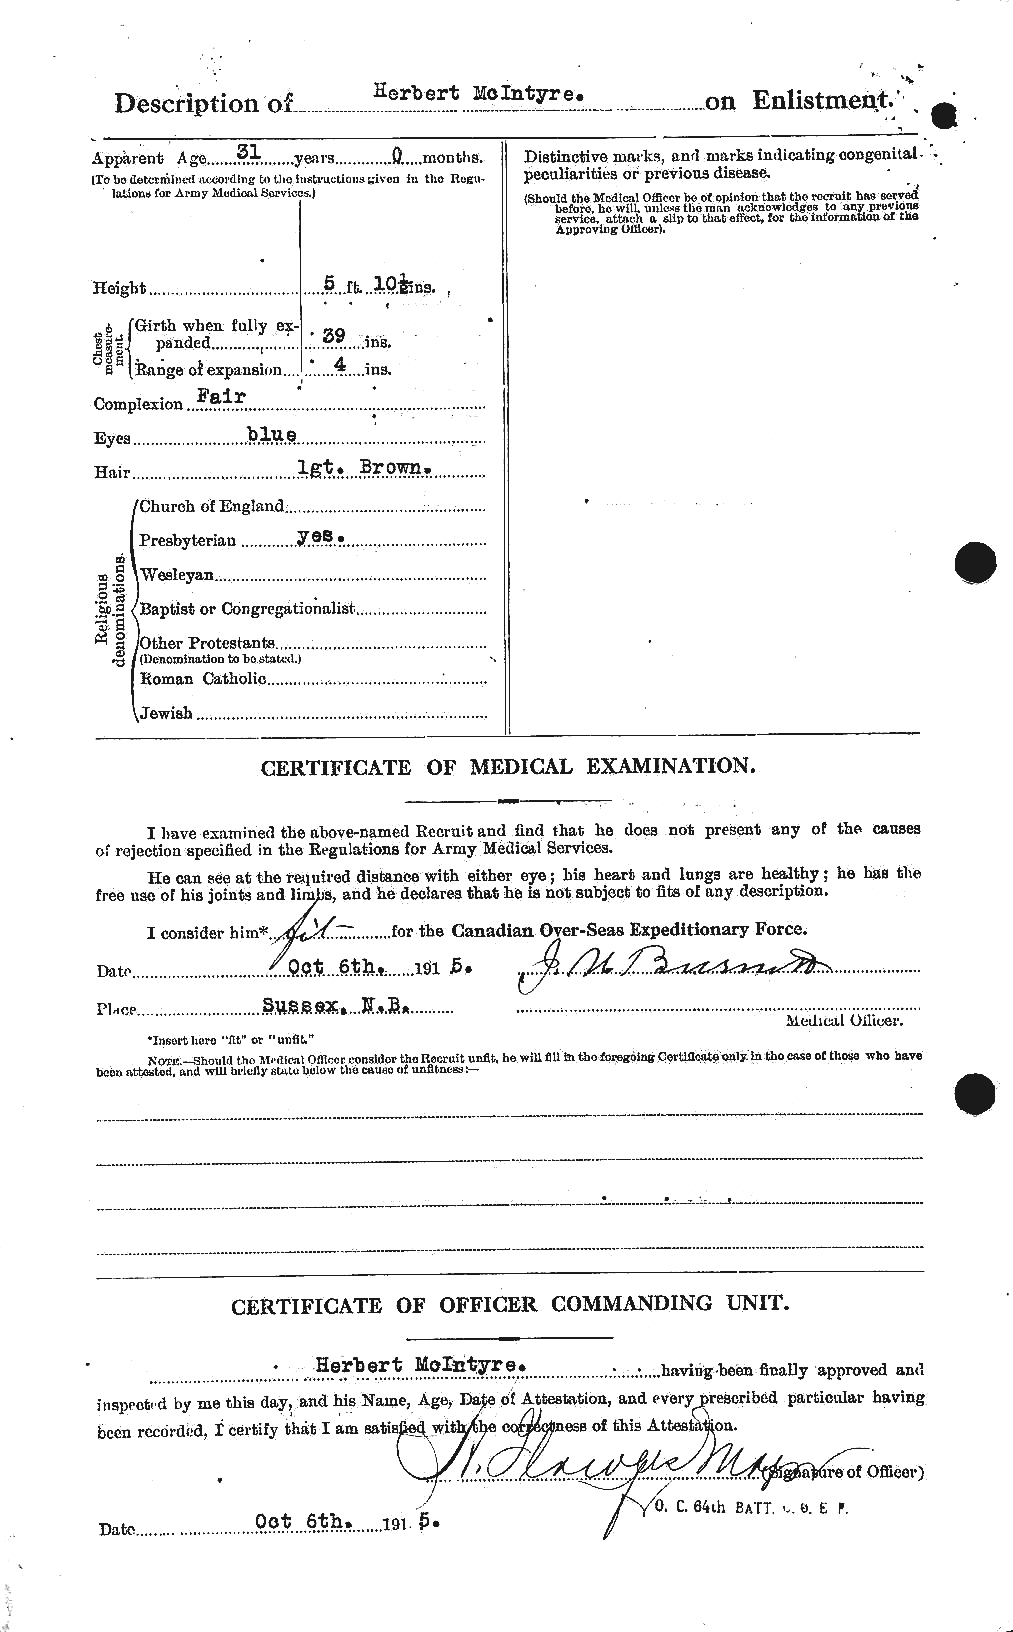 Dossiers du Personnel de la Première Guerre mondiale - CEC 527427b